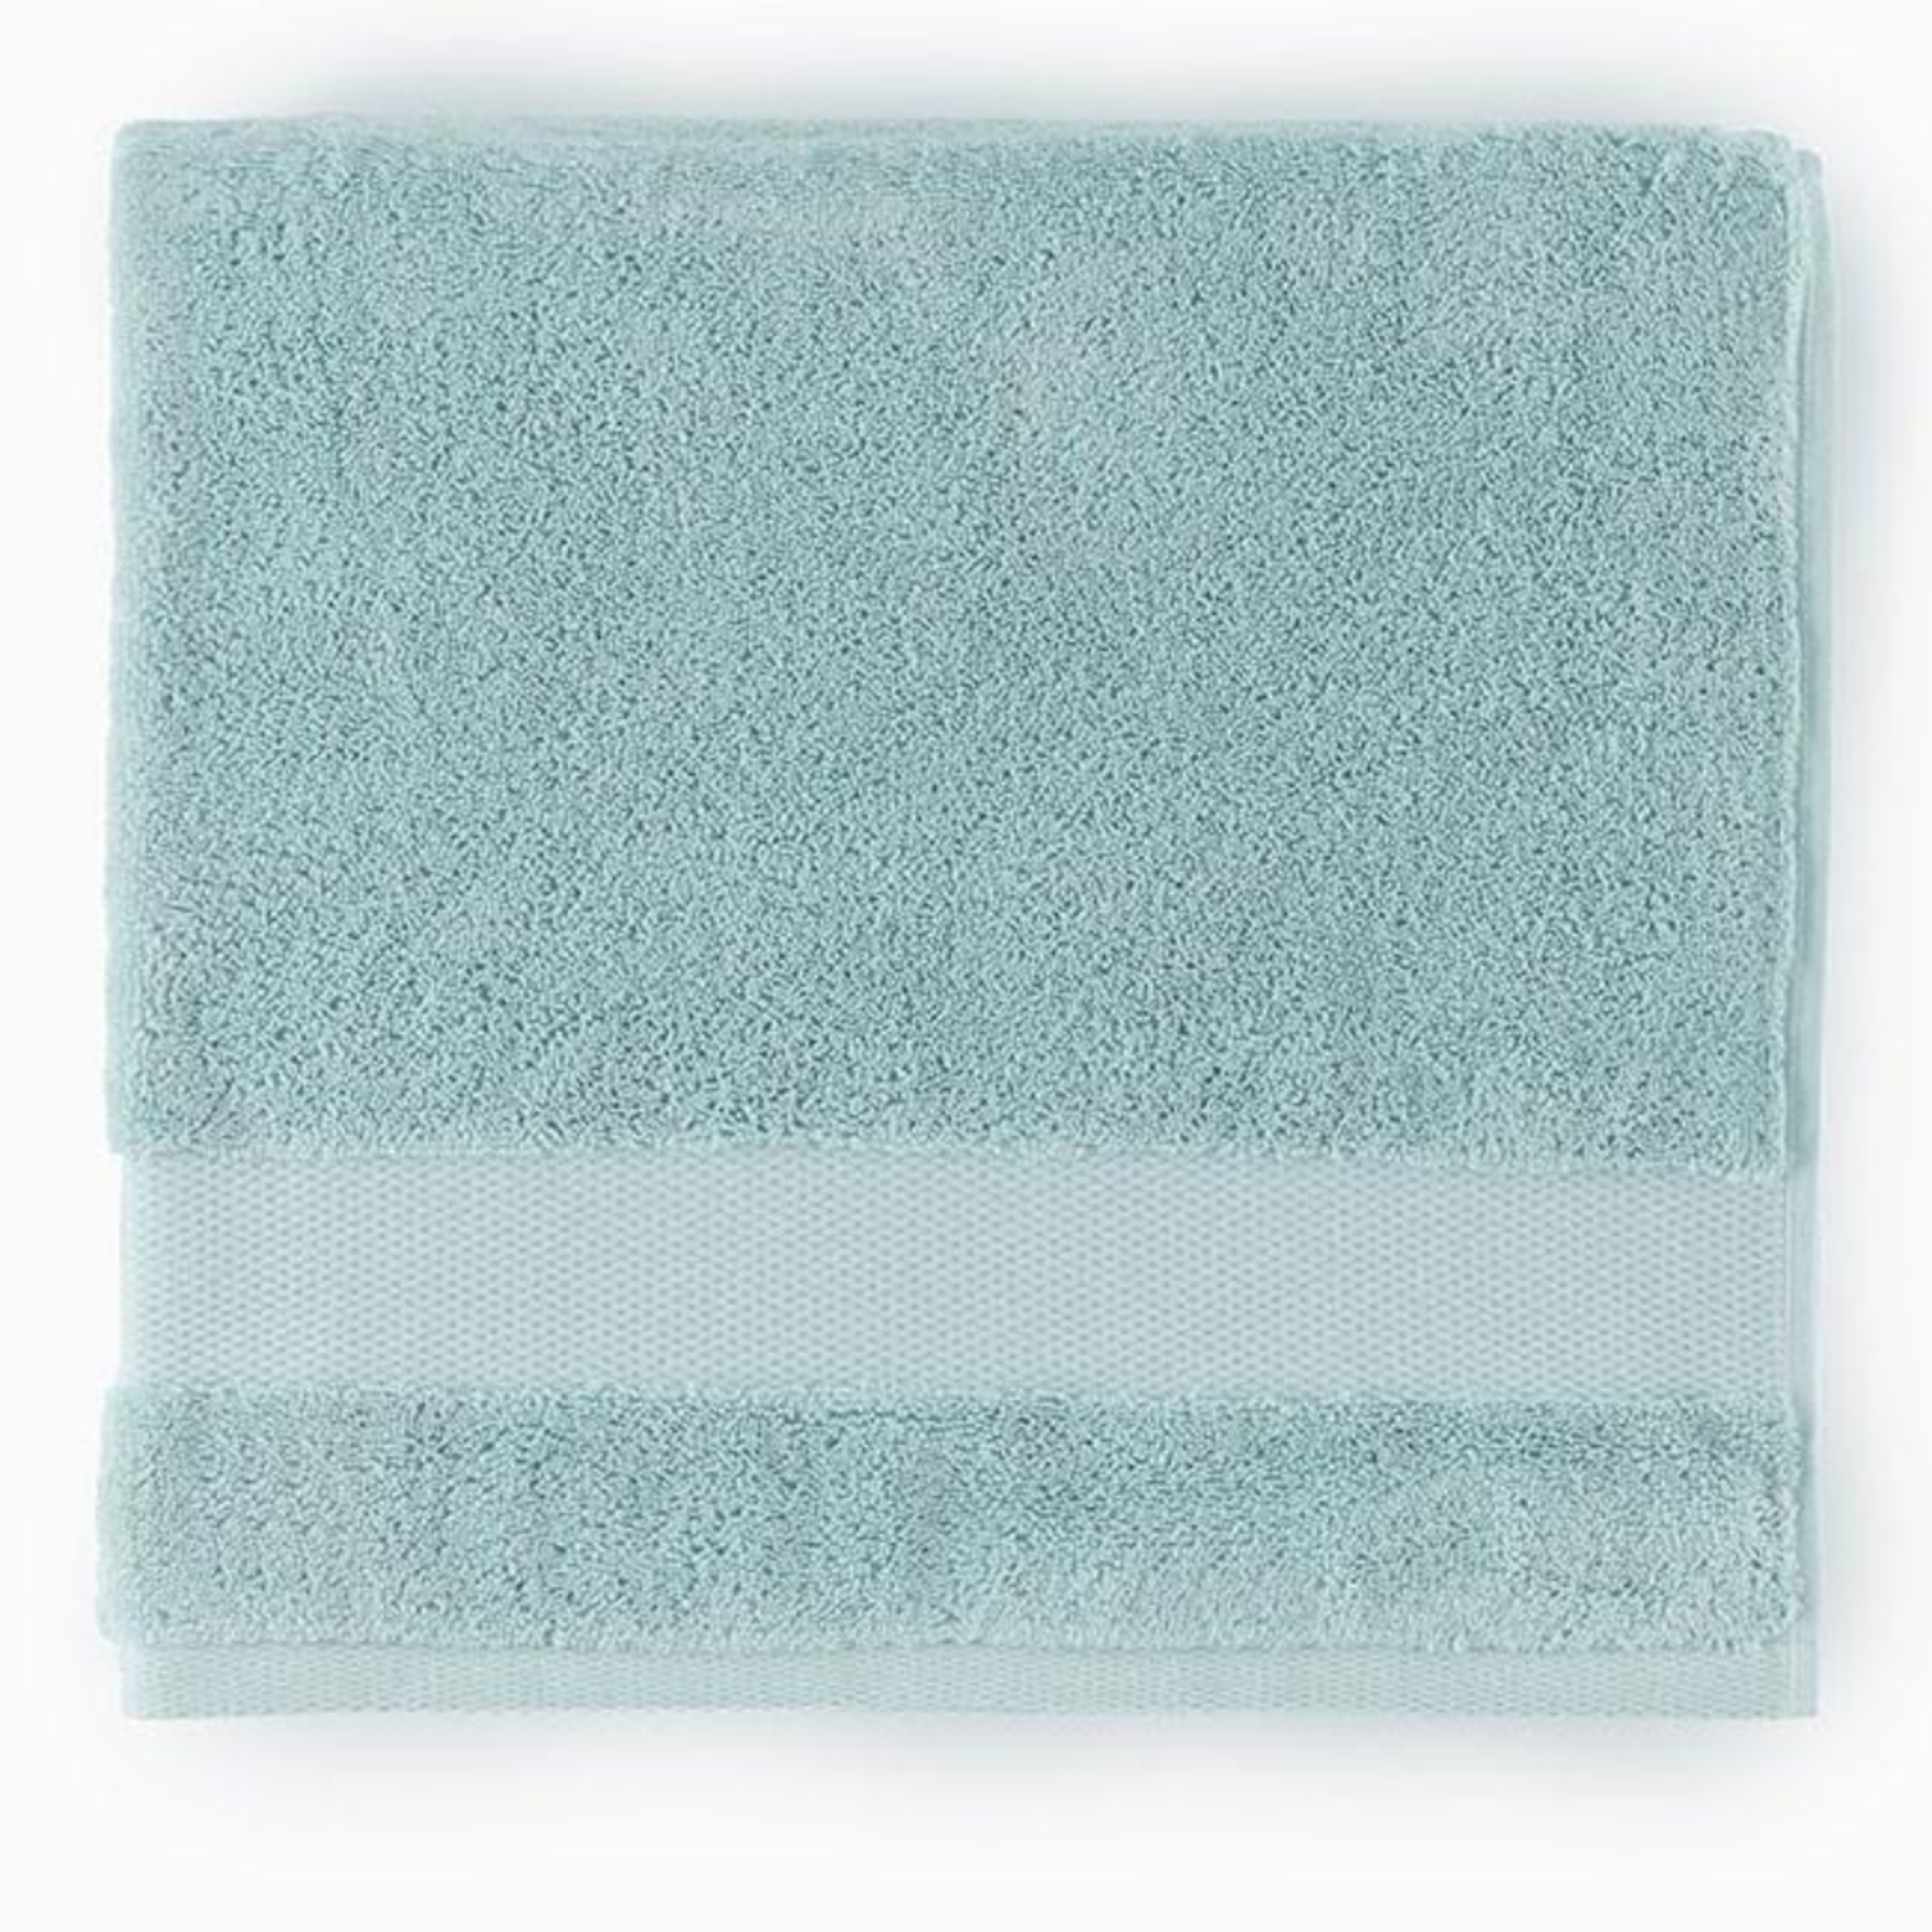 https://flandb.com/cdn/shop/products/Sferra-Bello-Bath-Towels-Aqua-Main_5000x.png?v=1668167923